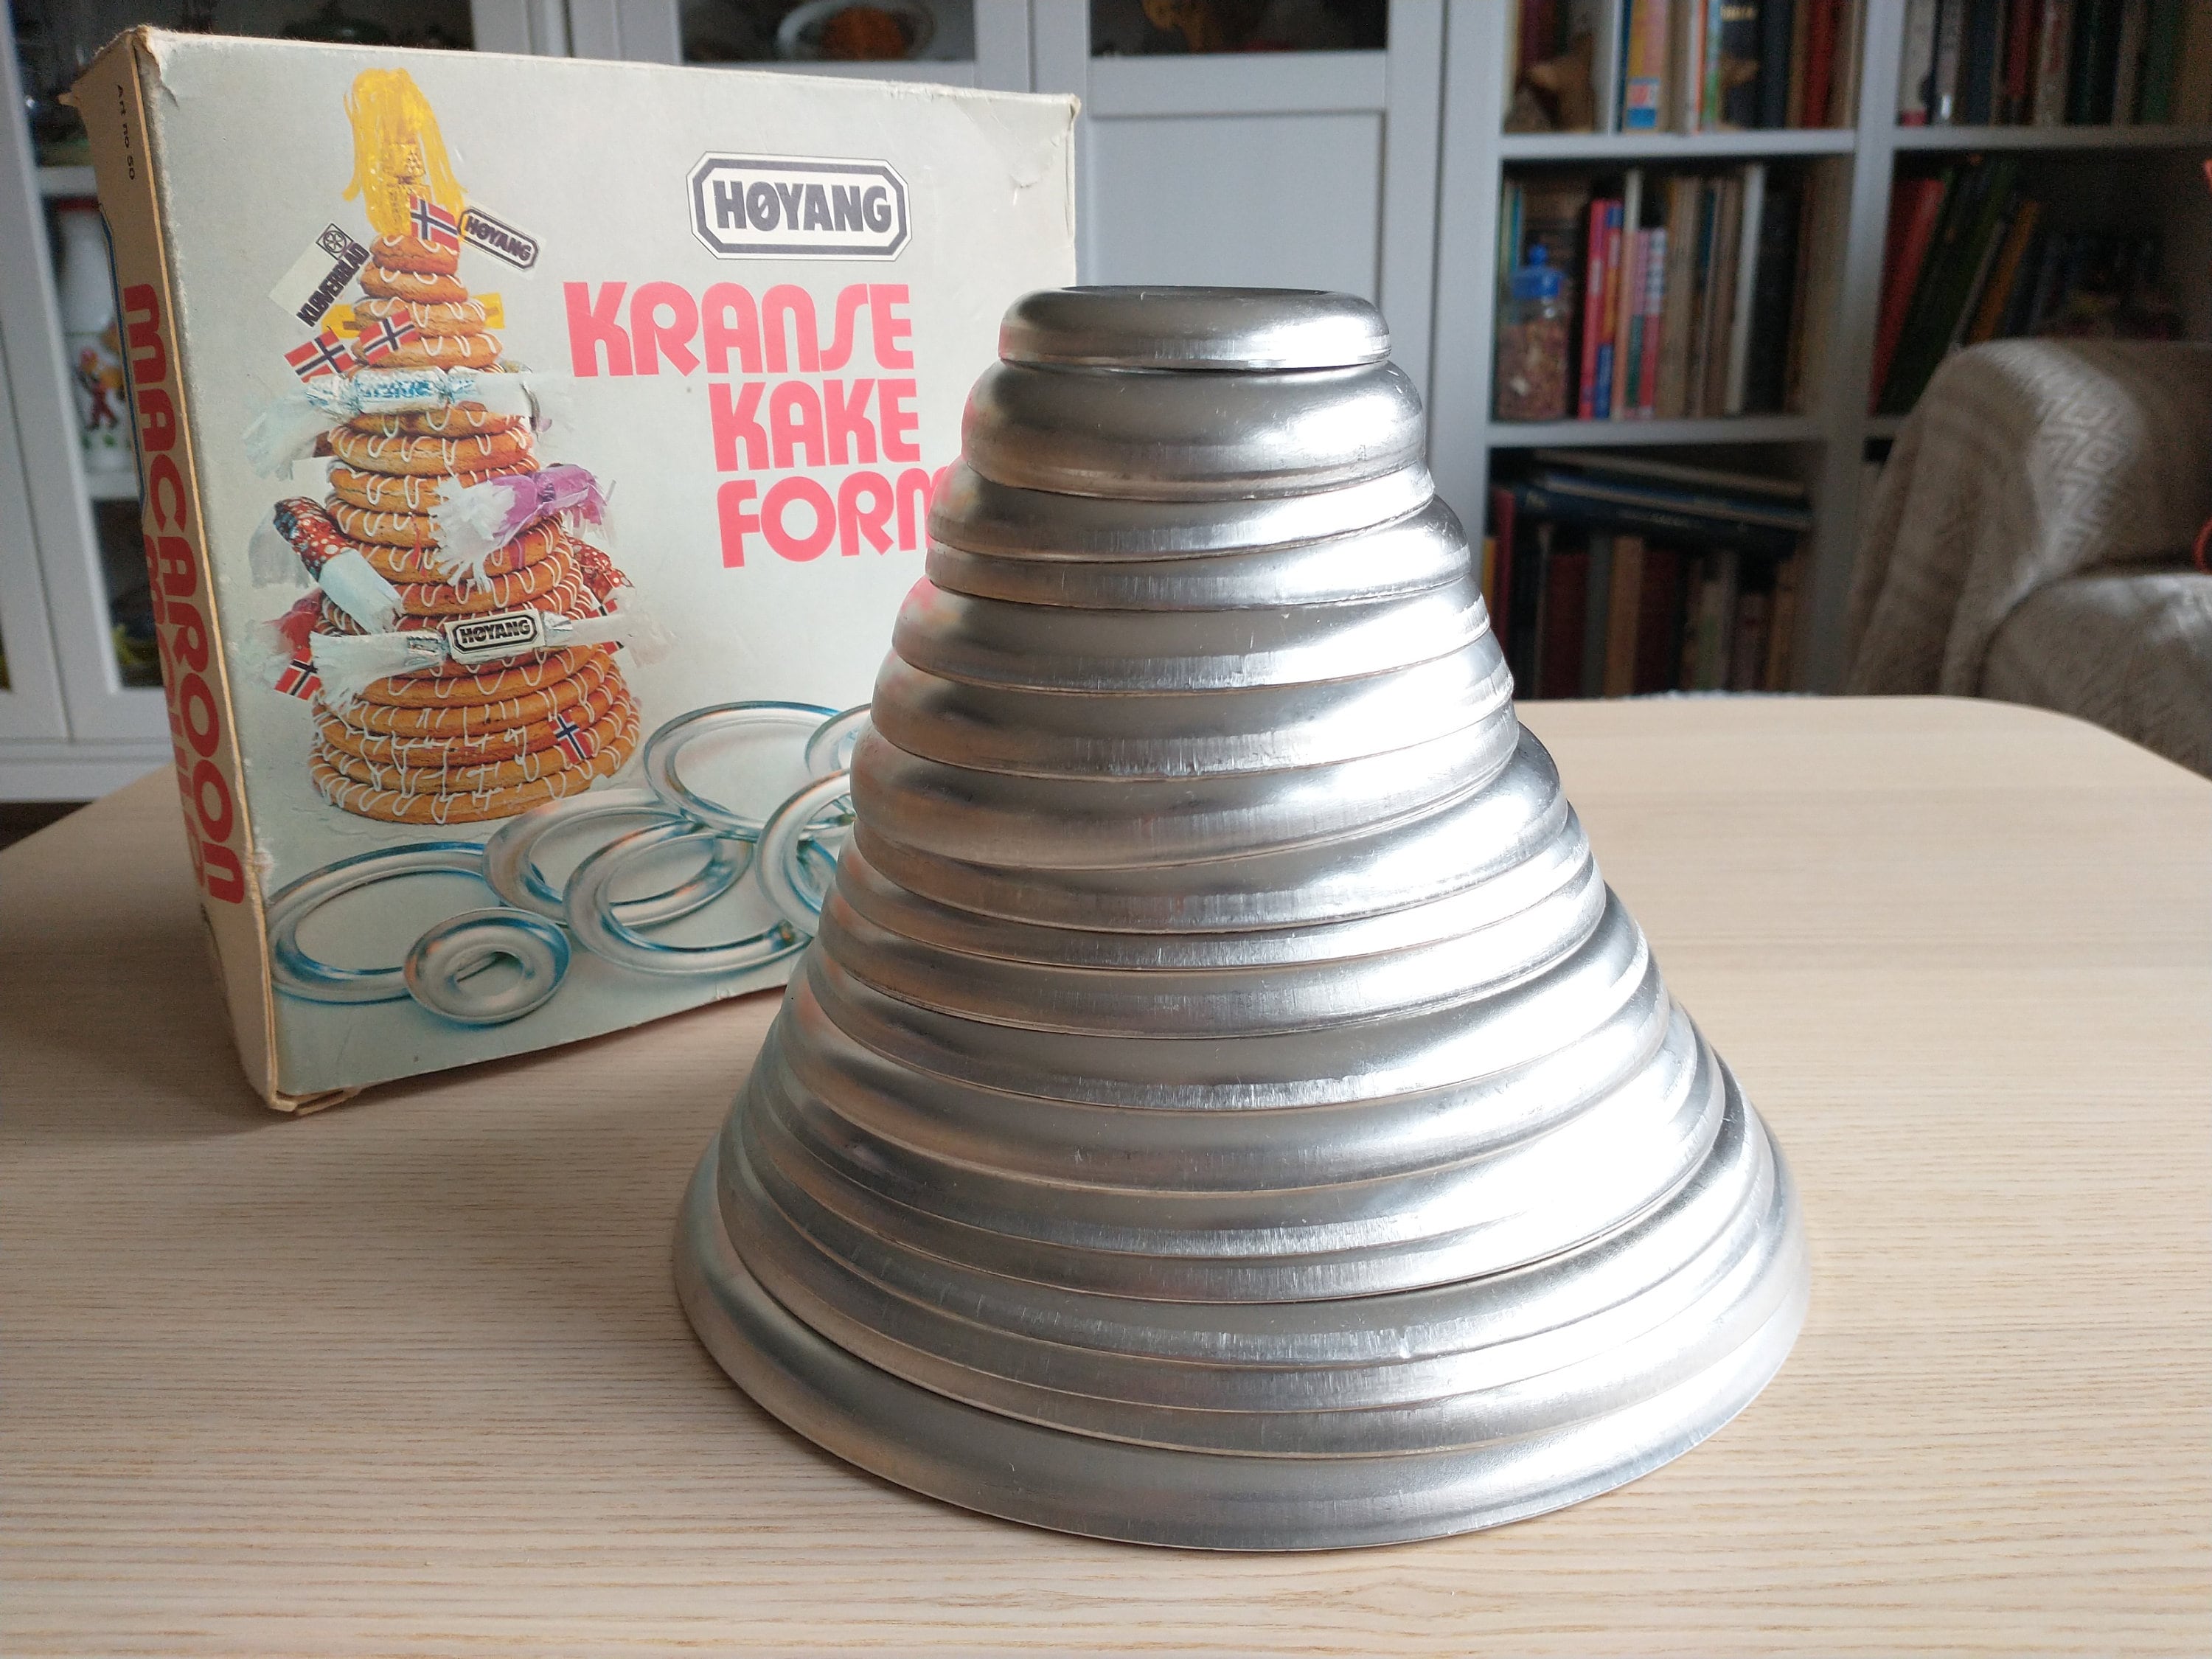 Kransekake Cake Pans Scandinavian Wedding Molds/Form Hoyang 6 Pans/18 Rings  Nice